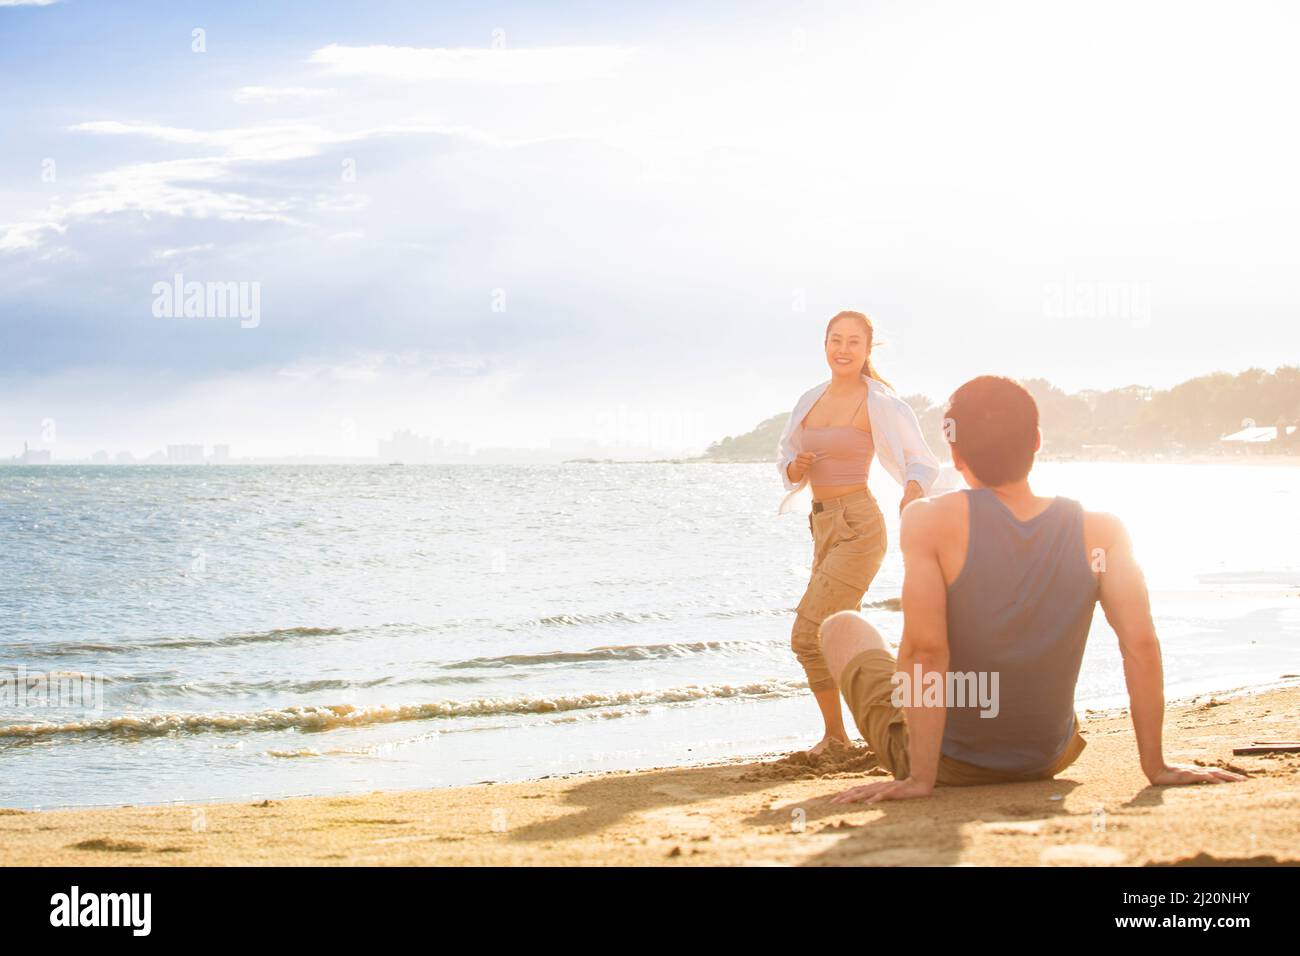 Un giovane seduto sulla spiaggia che guarda una giovane donna - foto di scorta Foto Stock